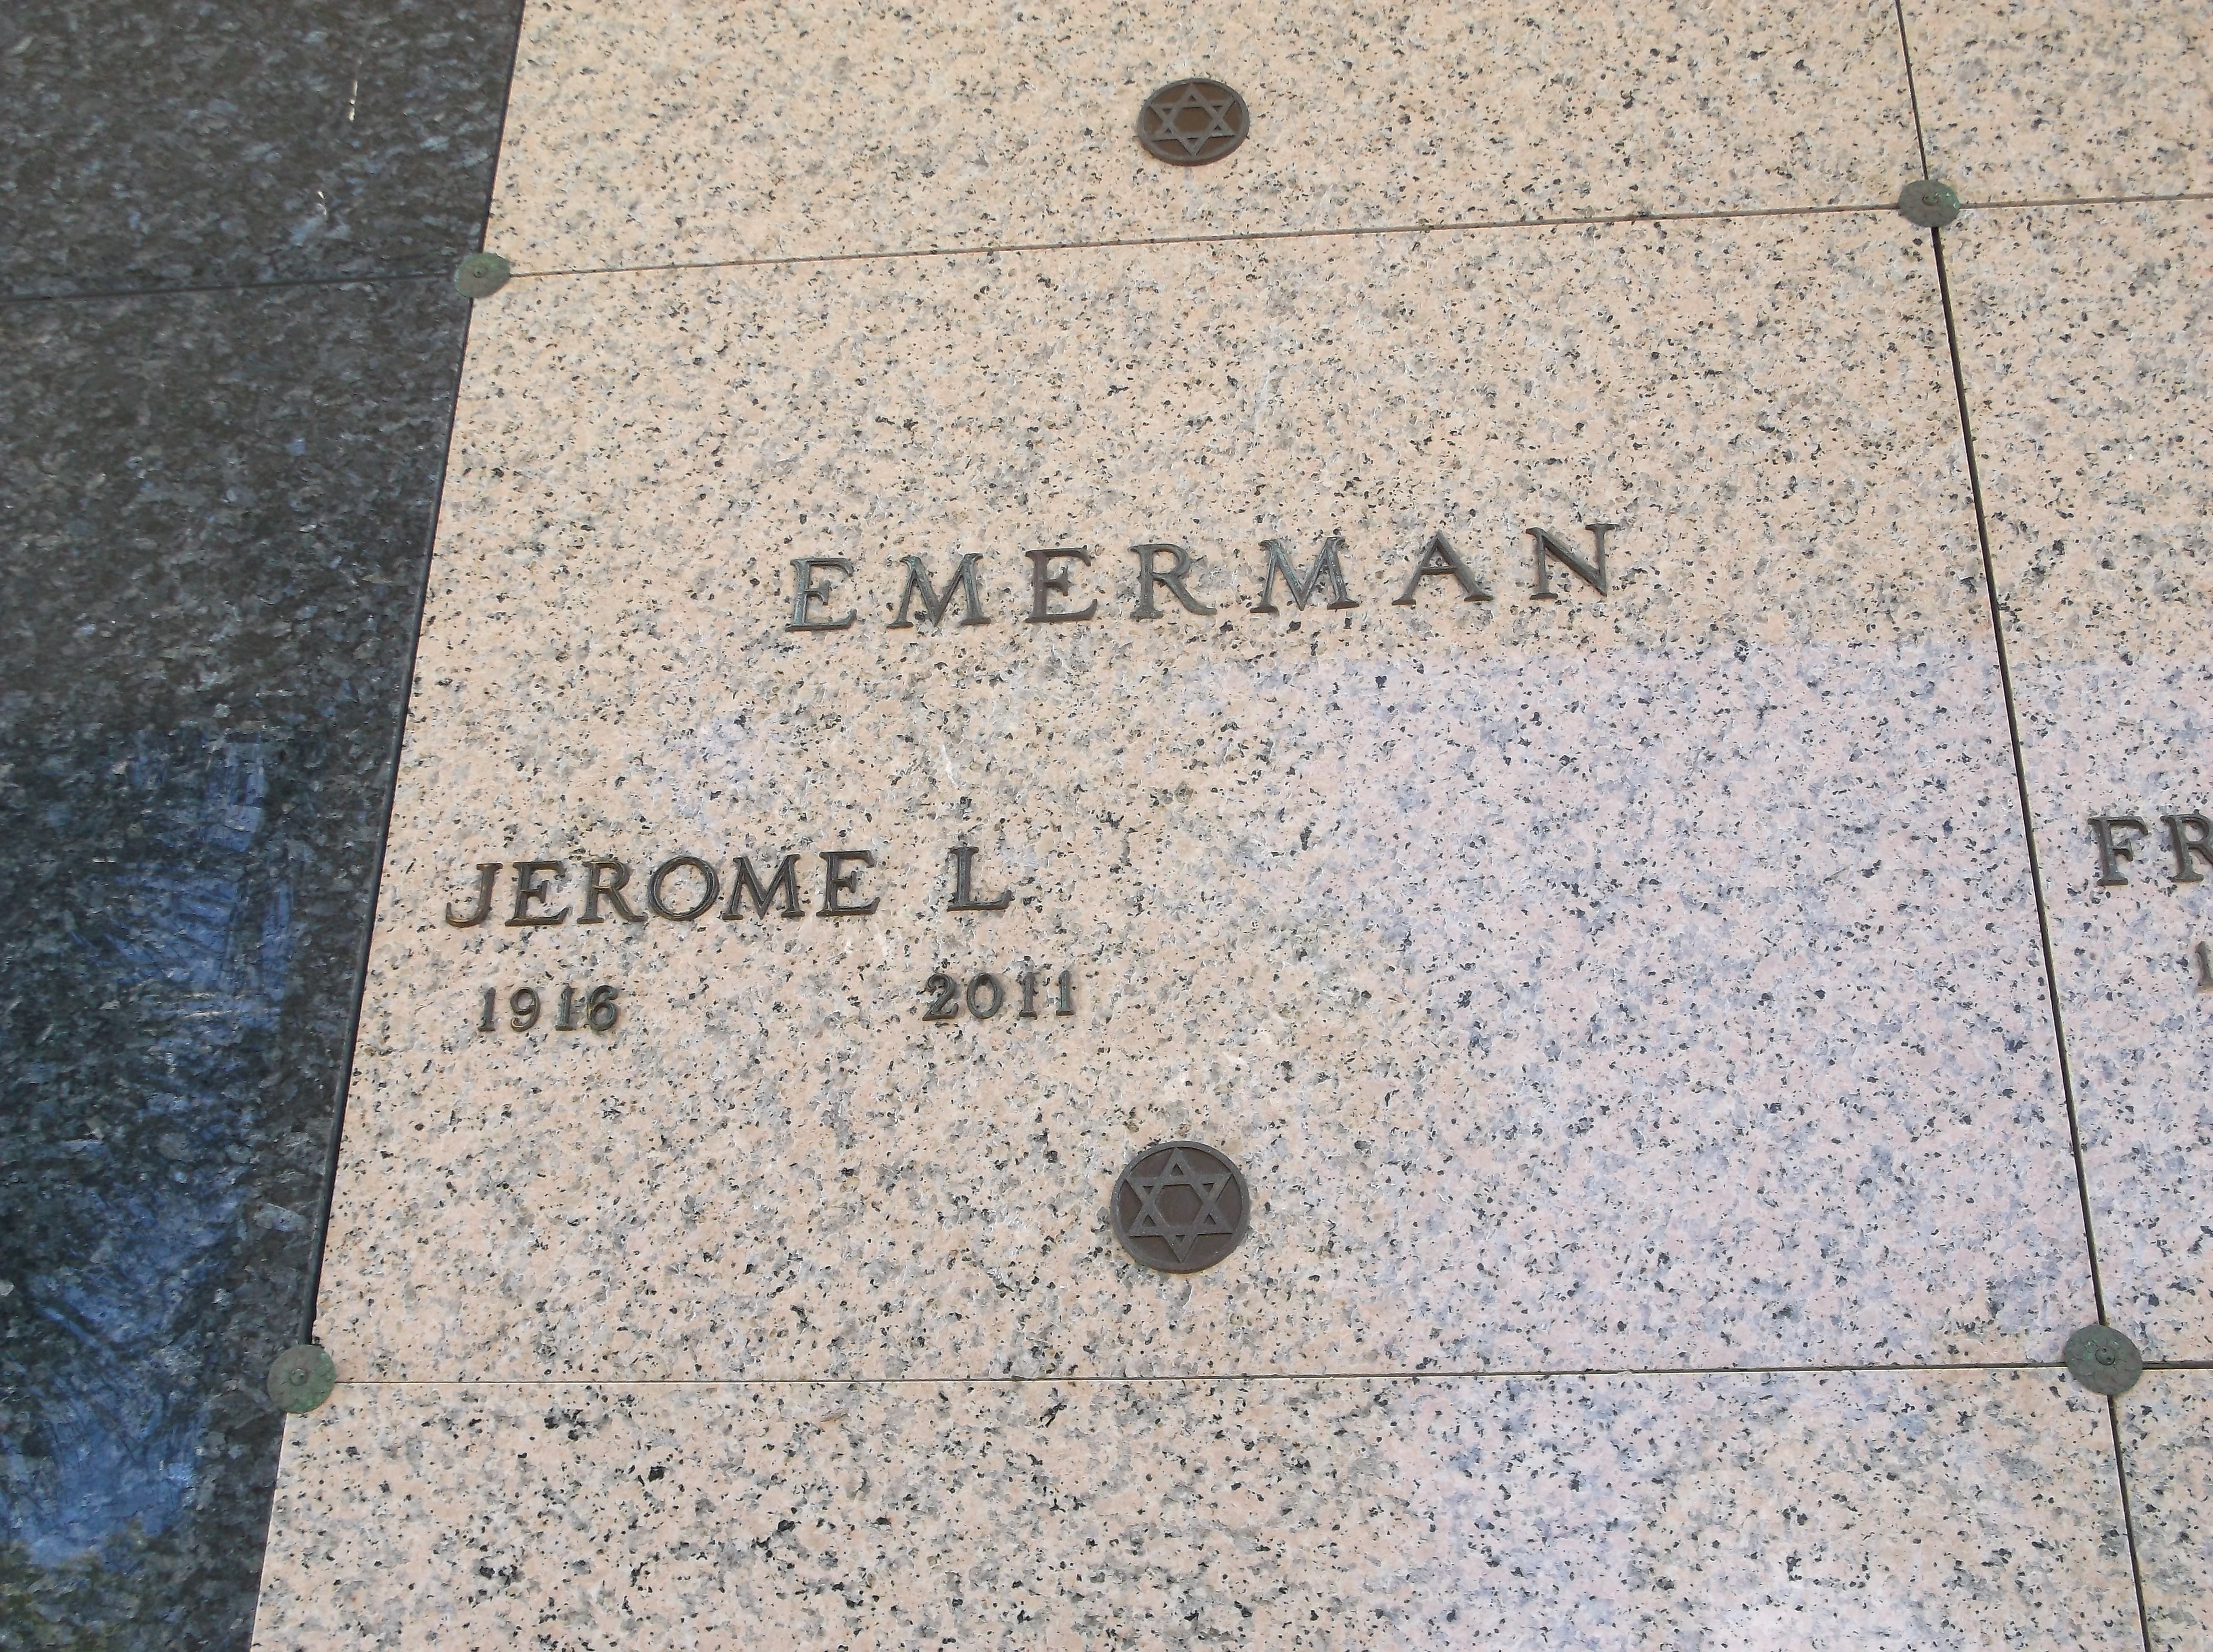 Jerome L Emerman